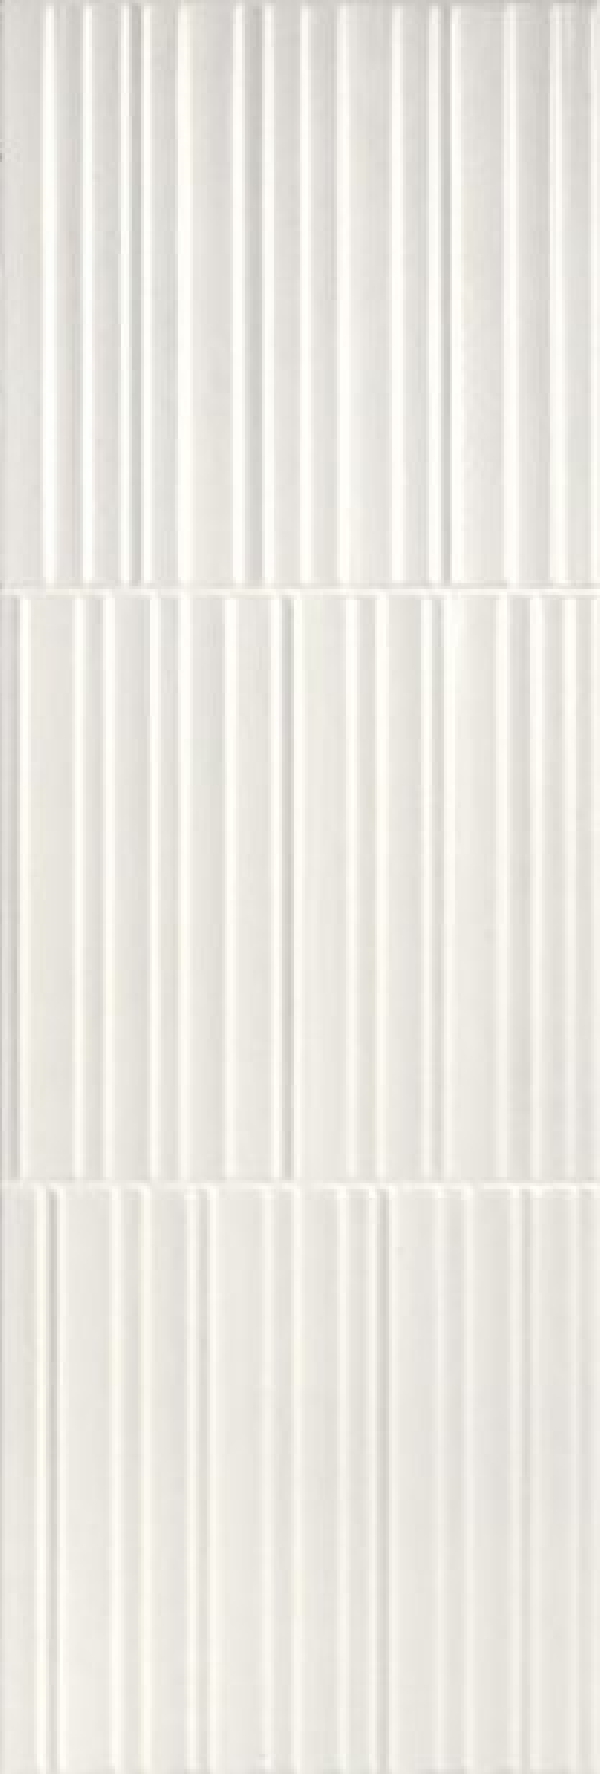 Faience Rotterdam White relieve 85.5 x 28.5cm, Pate rouge, pour intérieur et extérieur